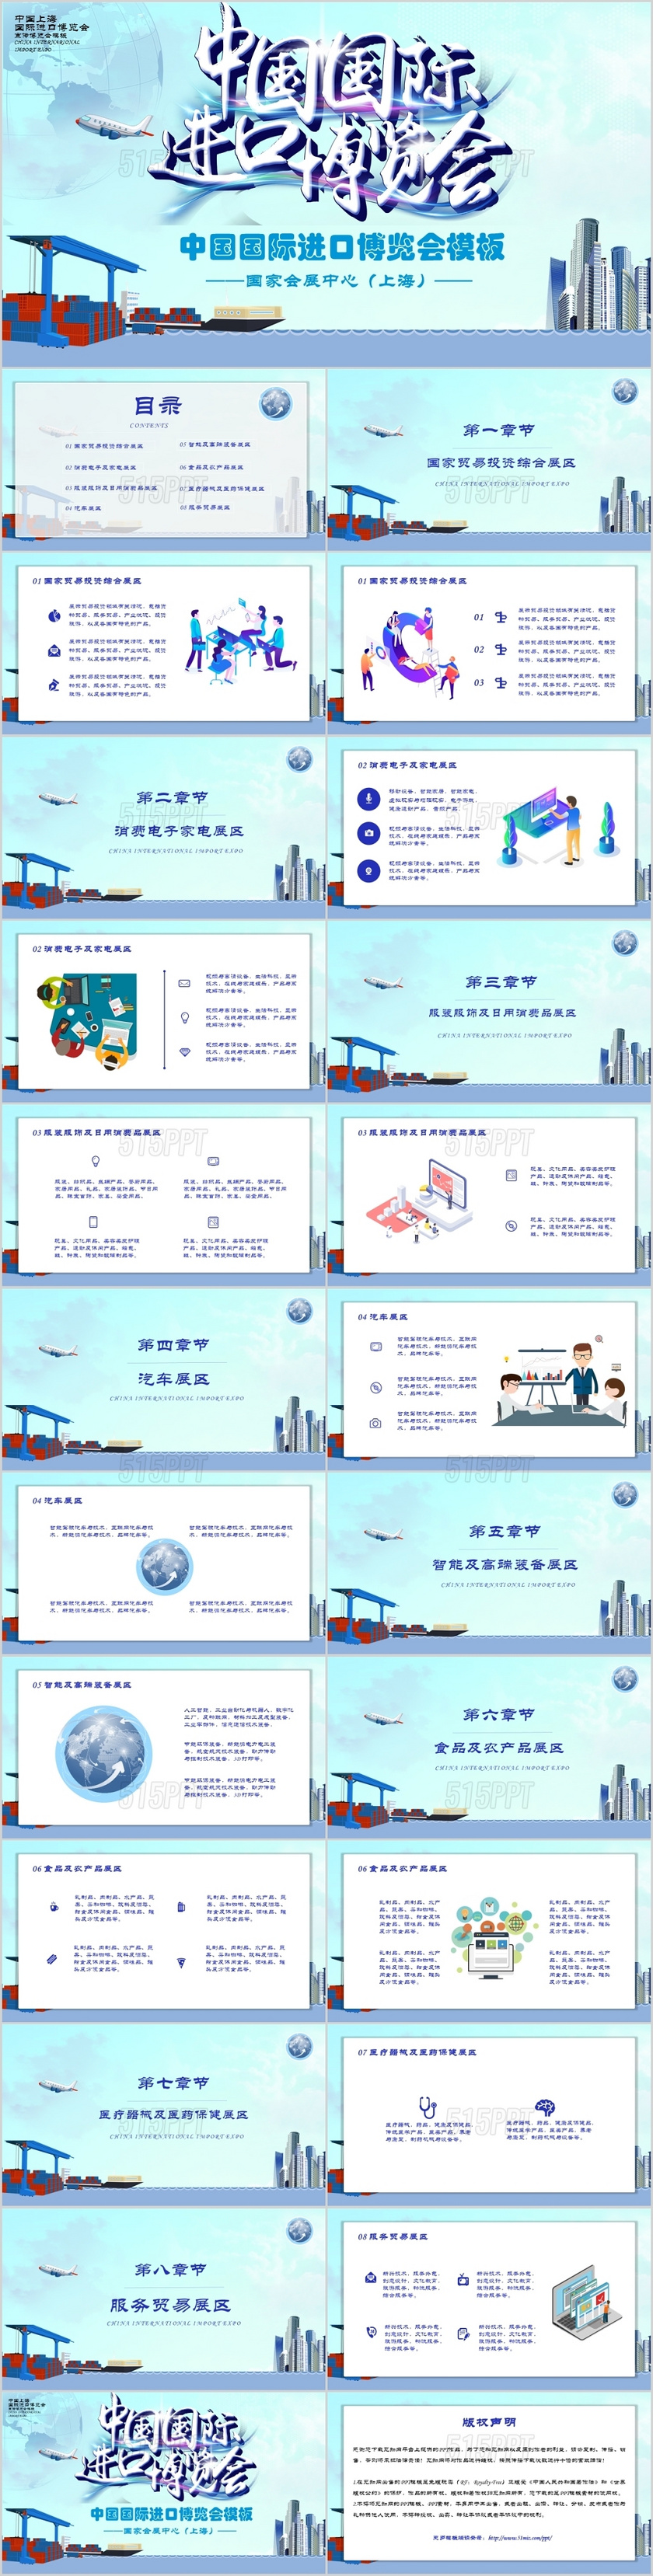 淡蓝色卡通中国国际进口博览会PPT模板